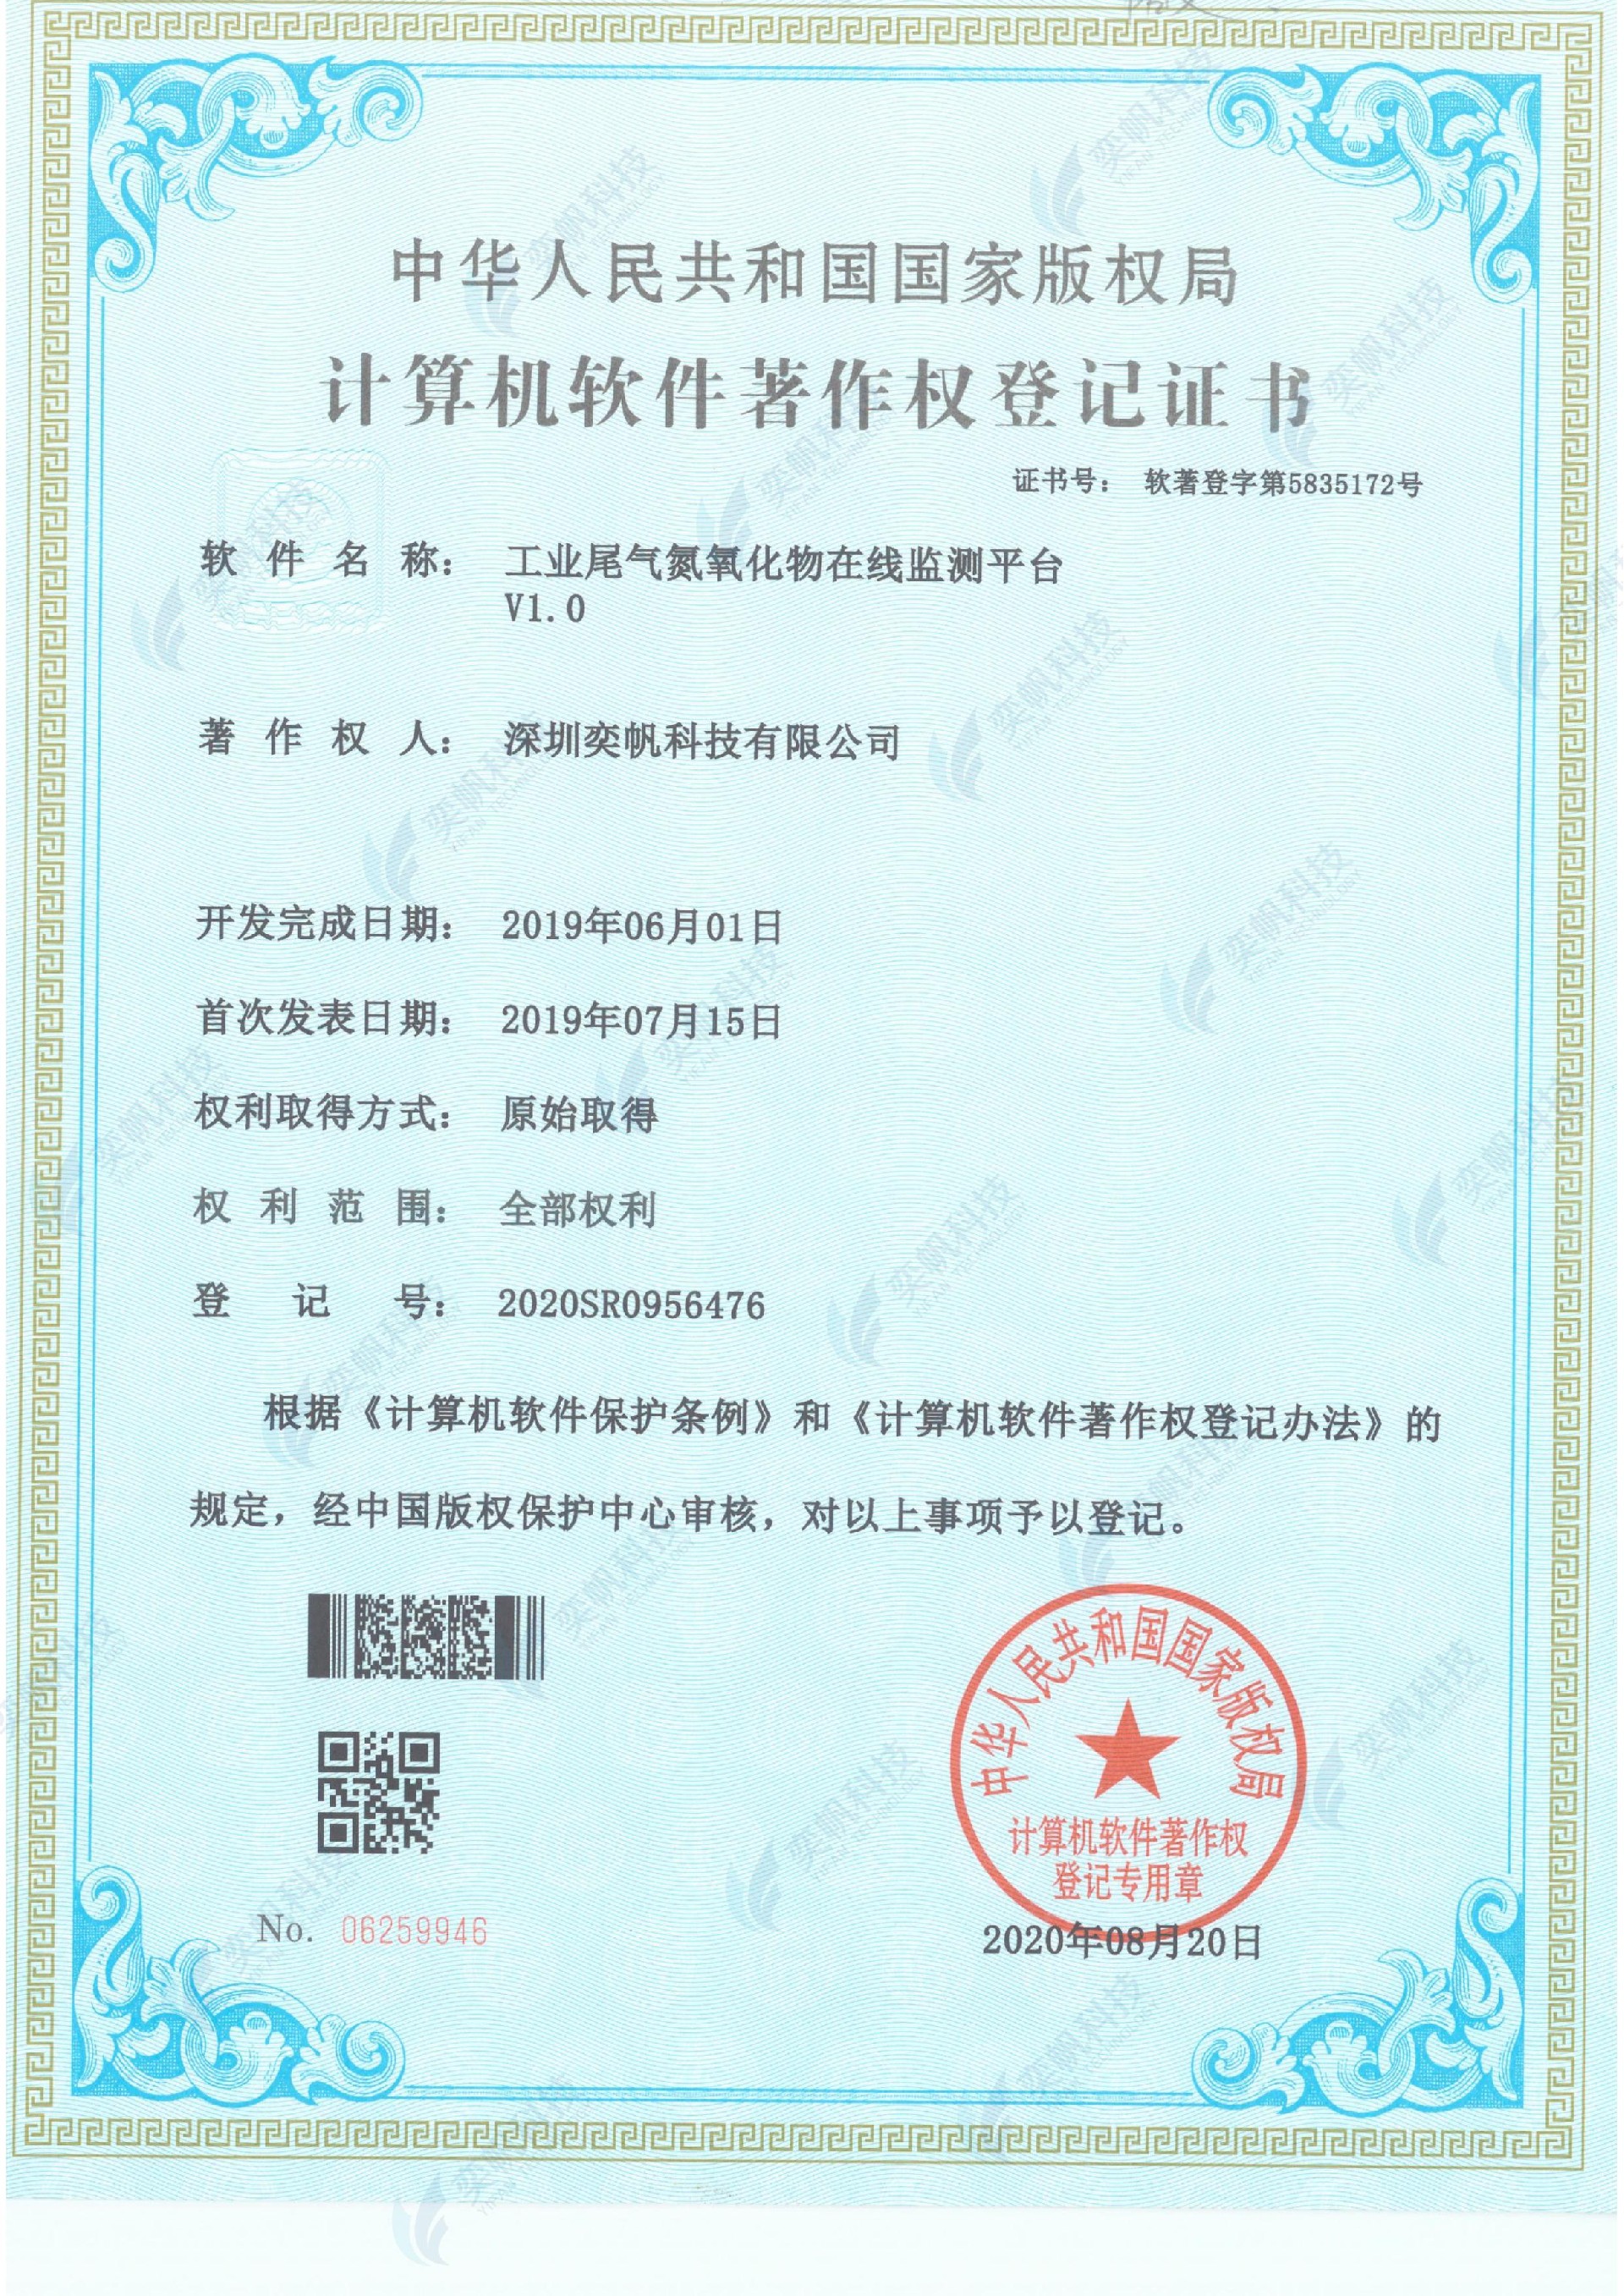 工业尾气氮氧化物在线监测平台-计算机软件著作权登记证书_00.jpg